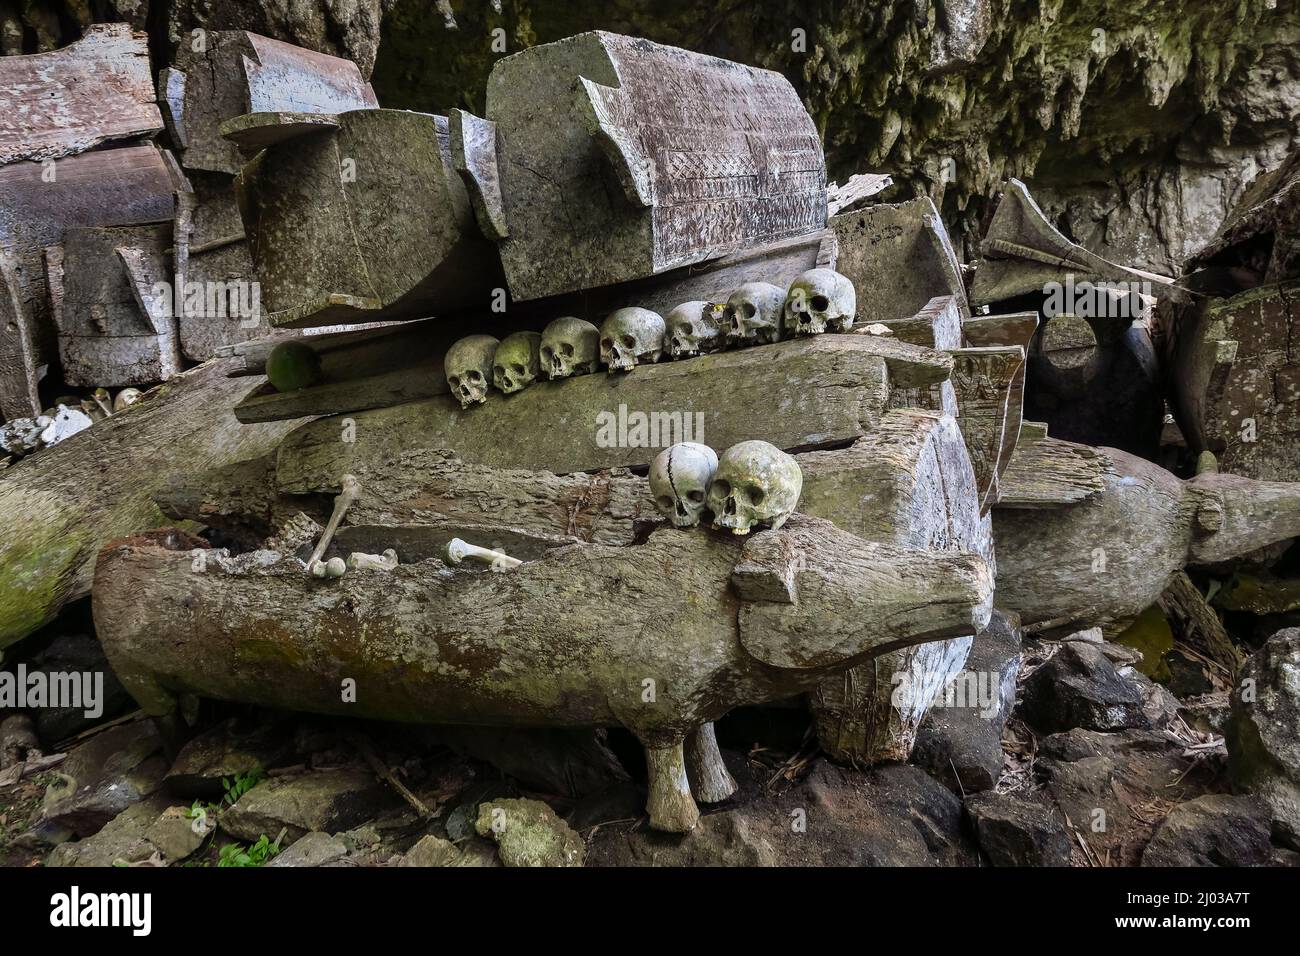 Schädel auf Särgen in einer 700 Jahre alten Grabhöhle in Parinding, nördlich von Rantepao, Lombok Parinding, Toraja, Süd-Sulawesi, Indonesien Stockfoto